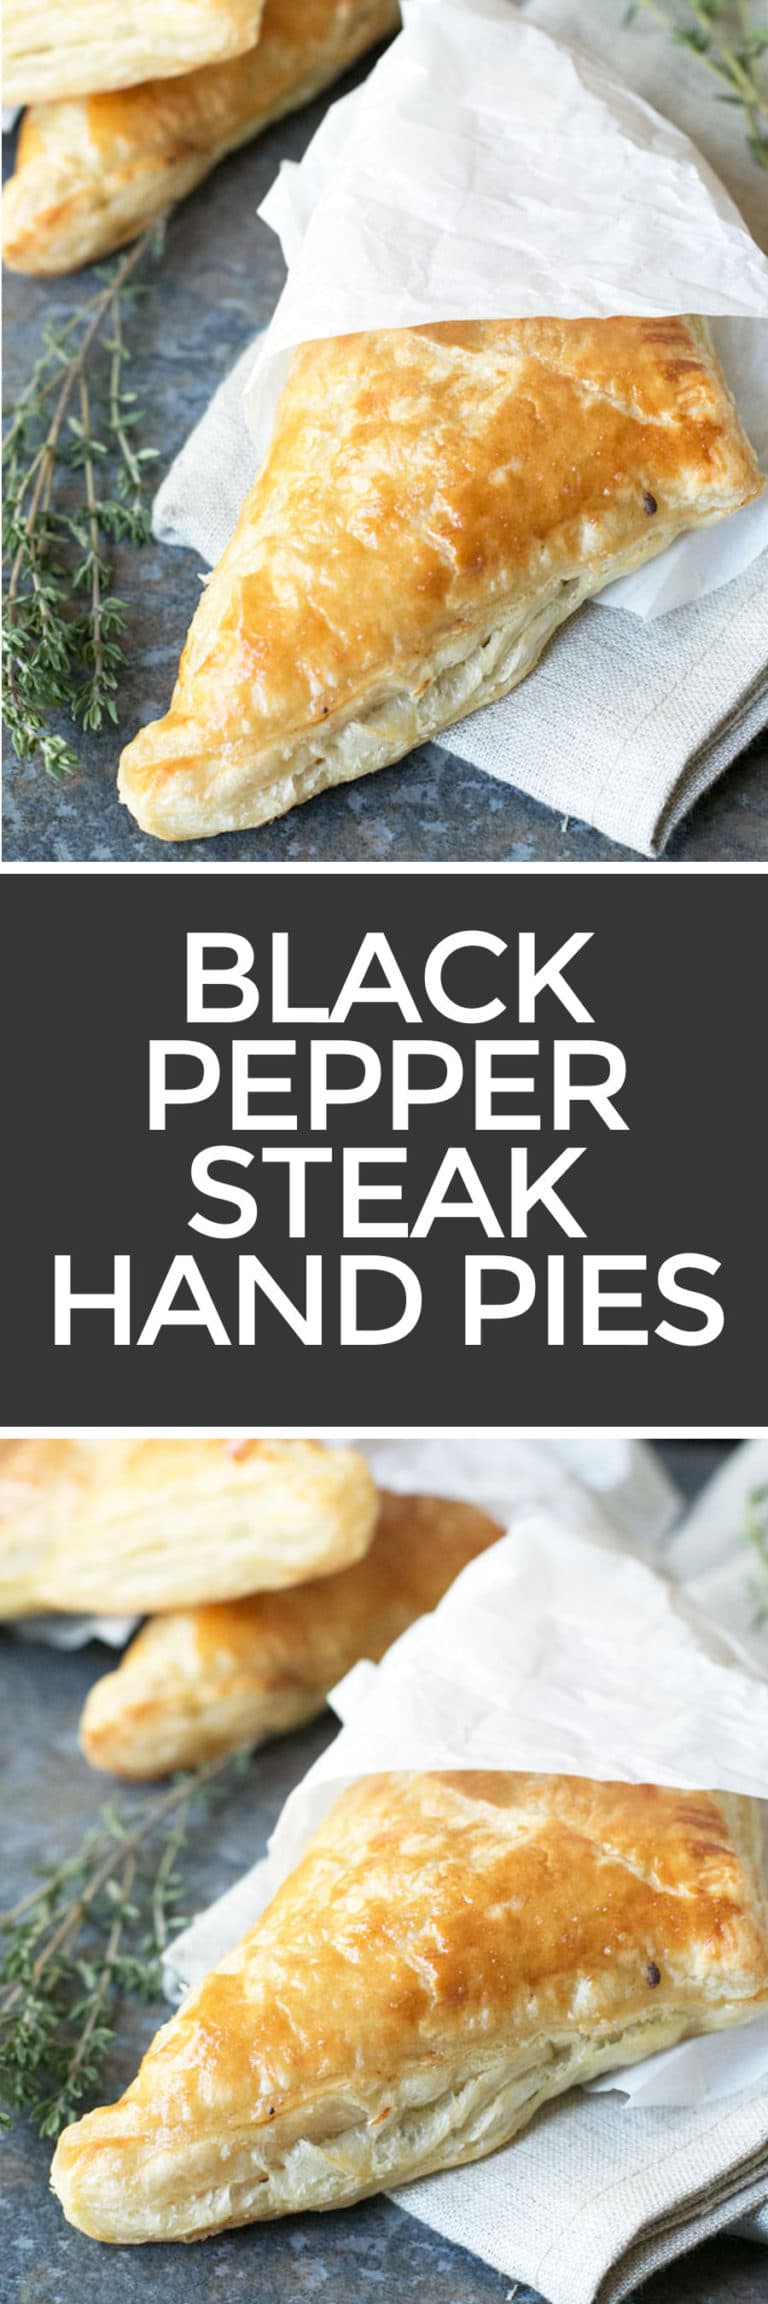 Black Pepper Steak Hand Pies | Cake 'n Knife